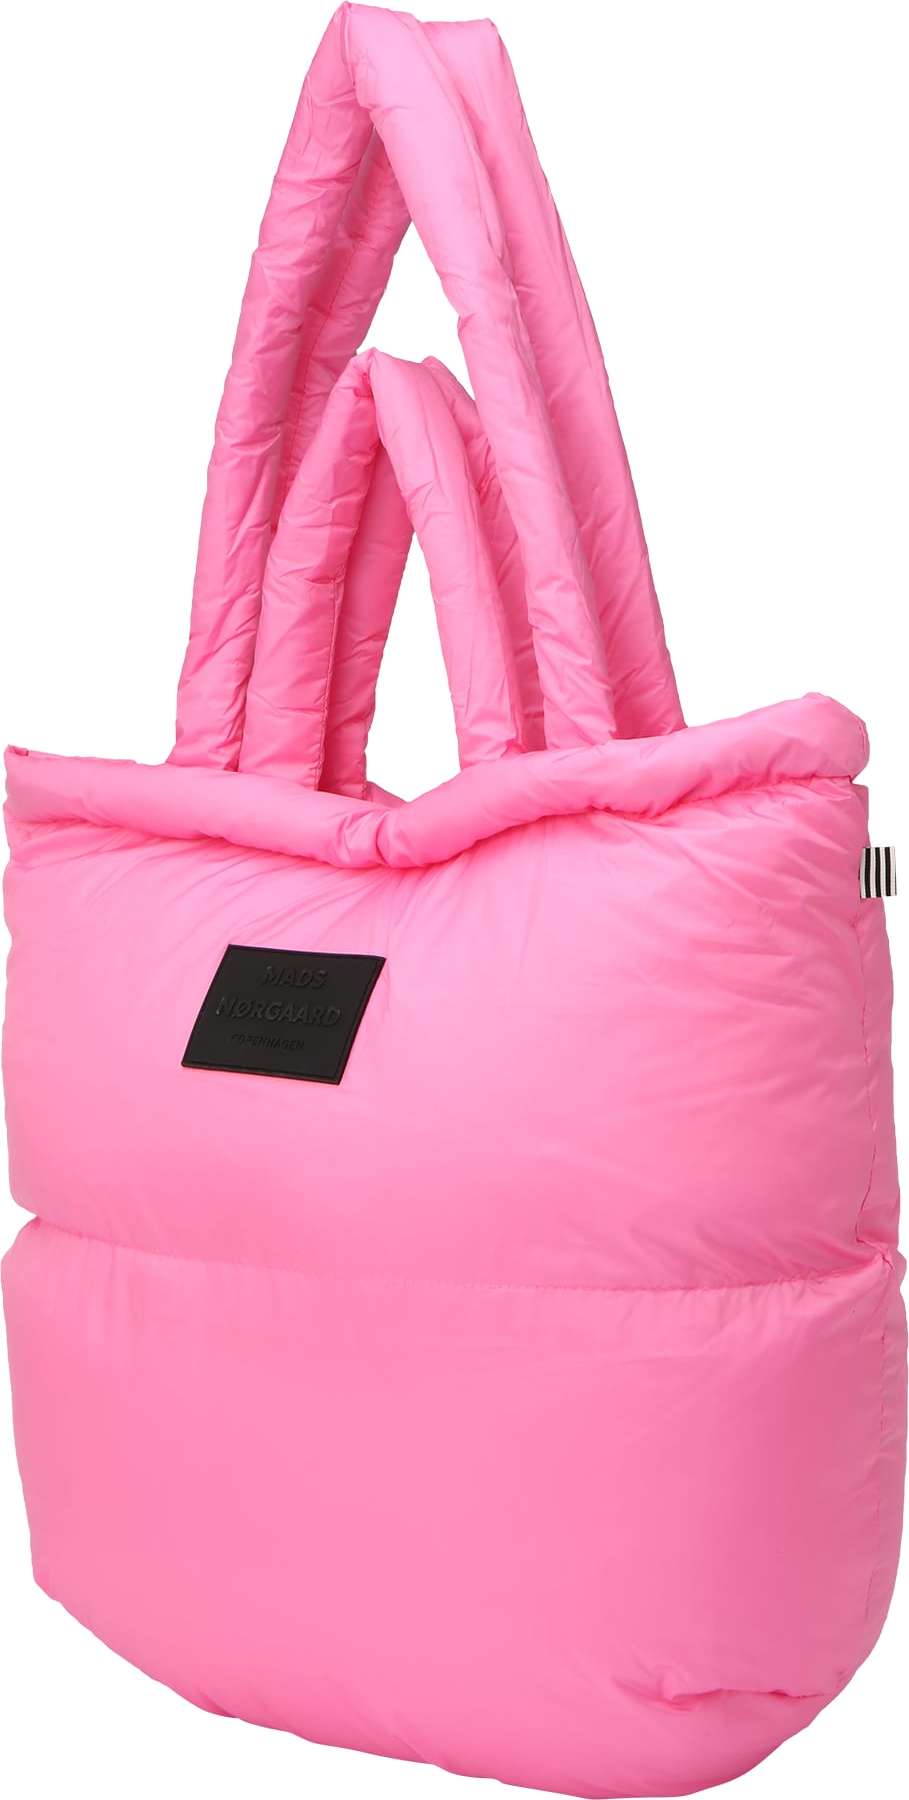 MADS NORGAARD COPENHAGEN Nákupní taška 'Dreamy' pink